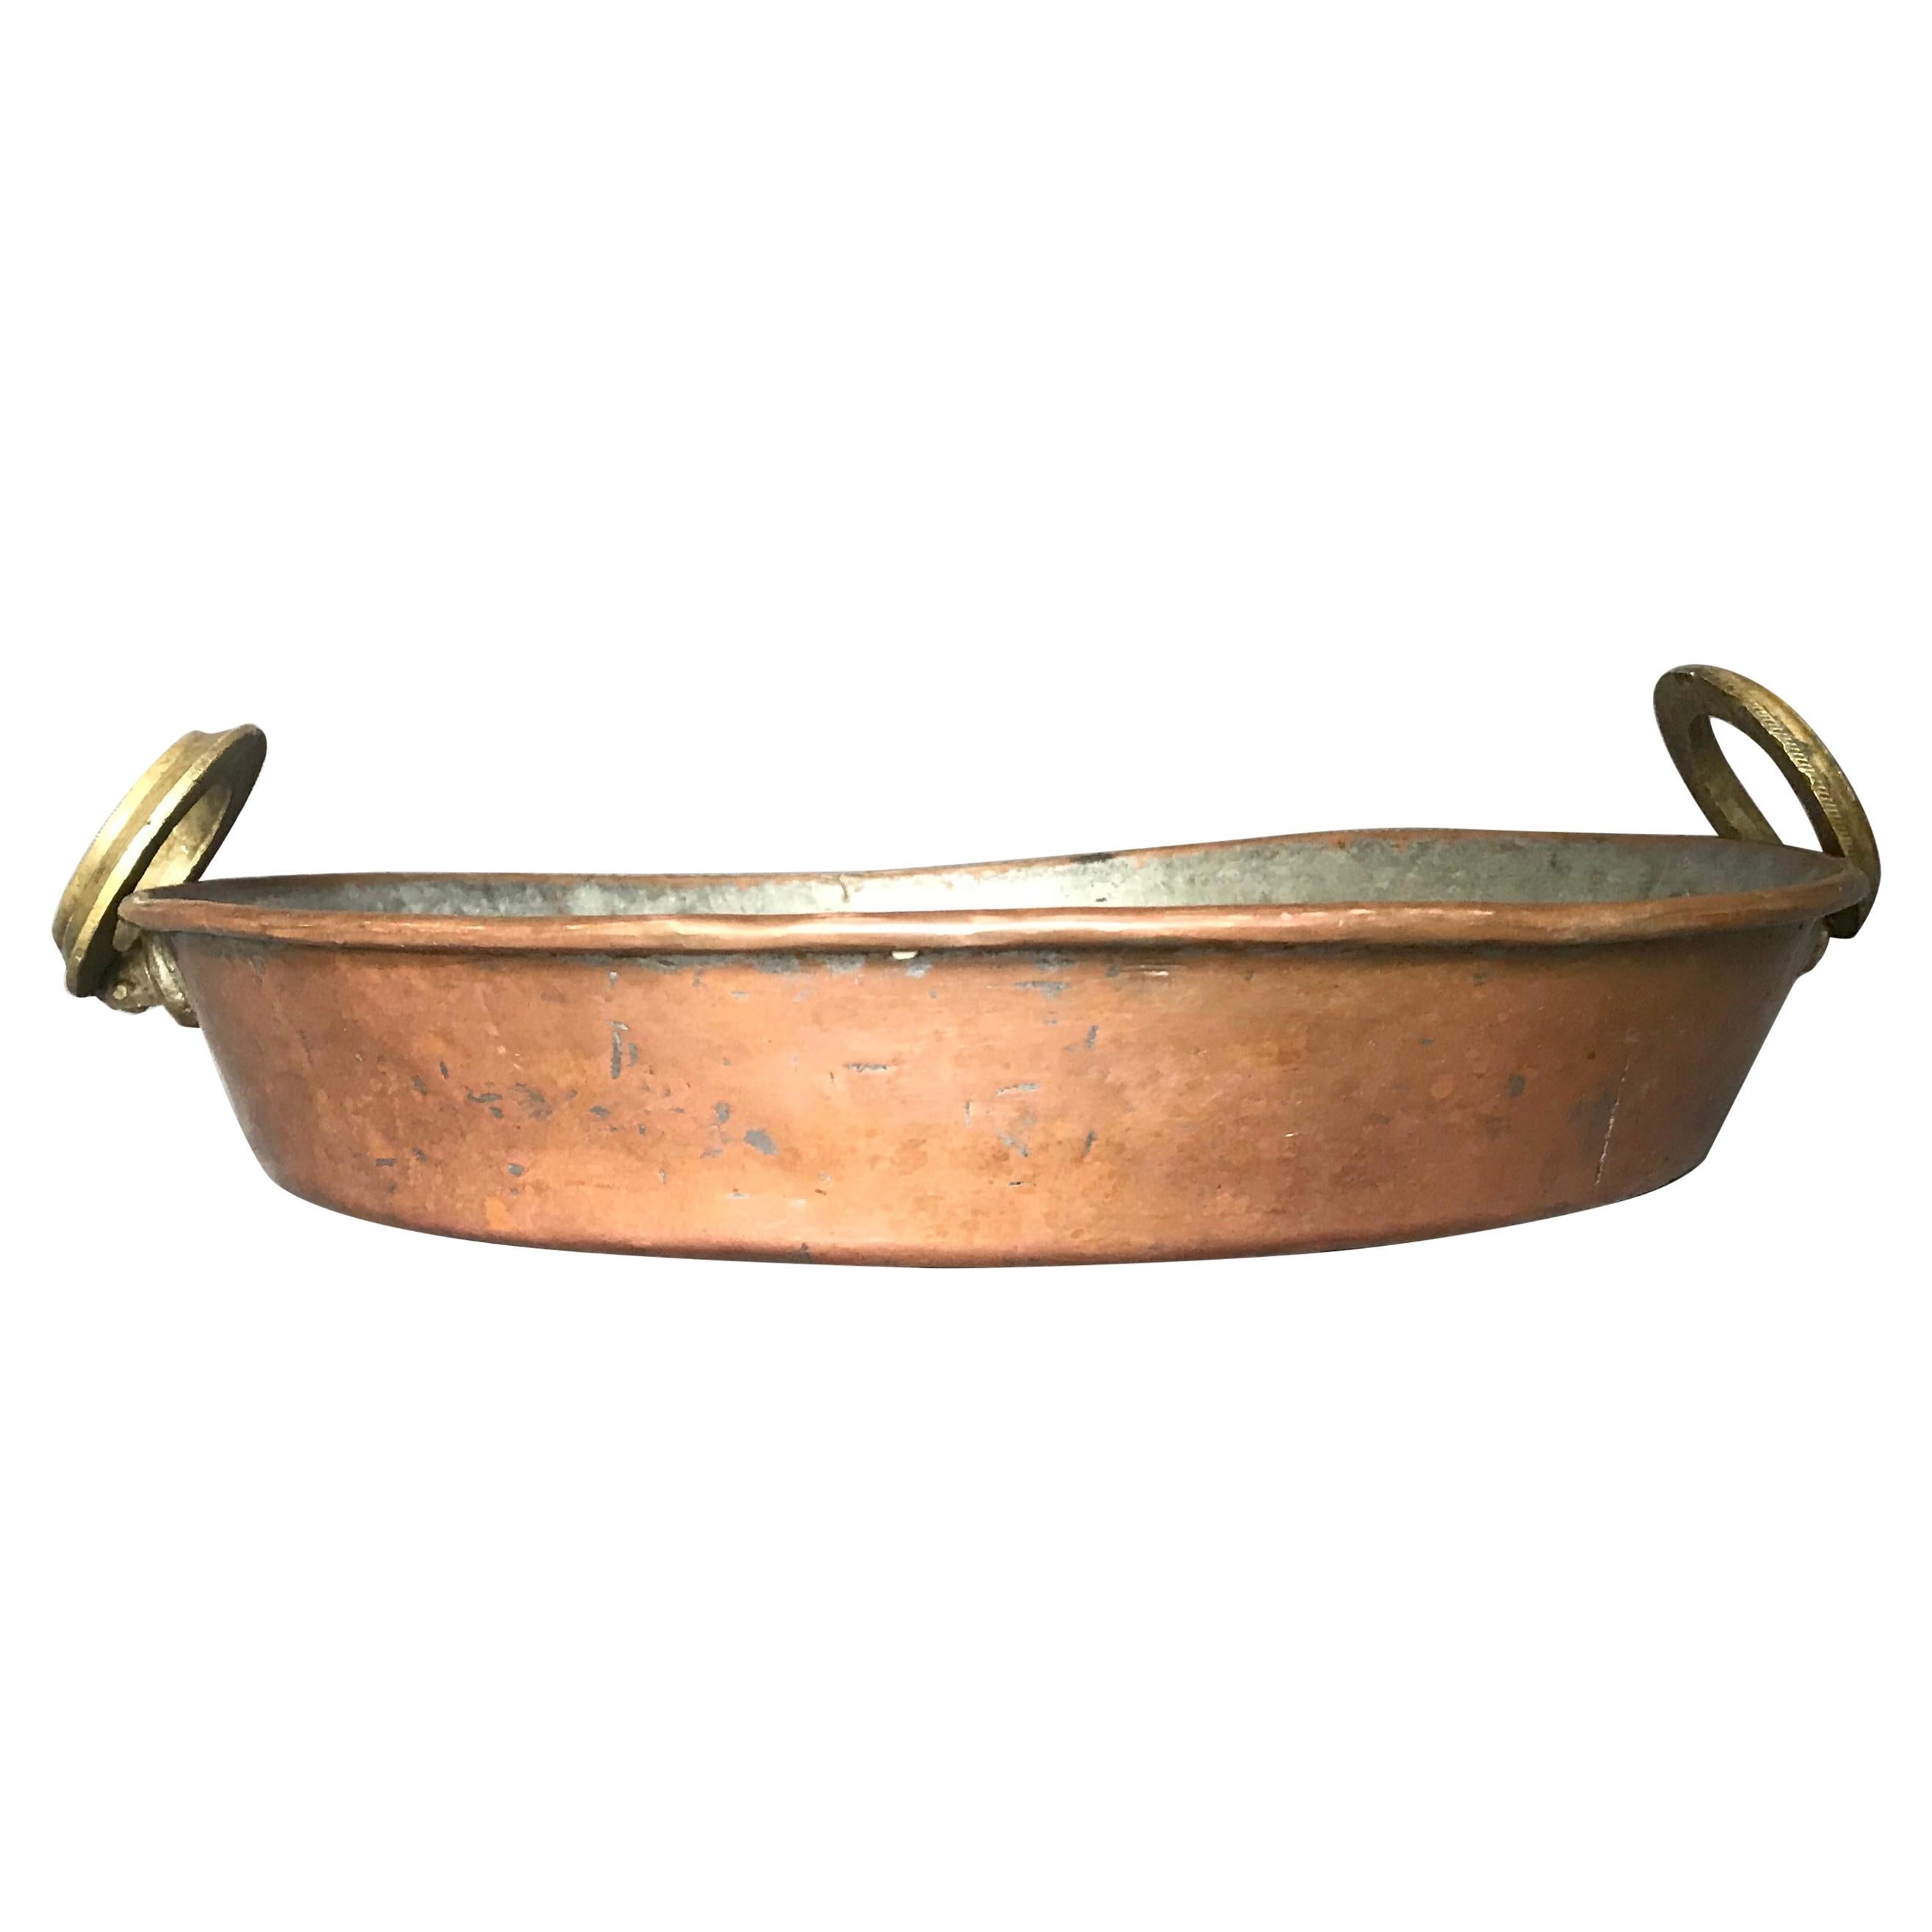 Brass Handled Copper Pot / Braising Pan